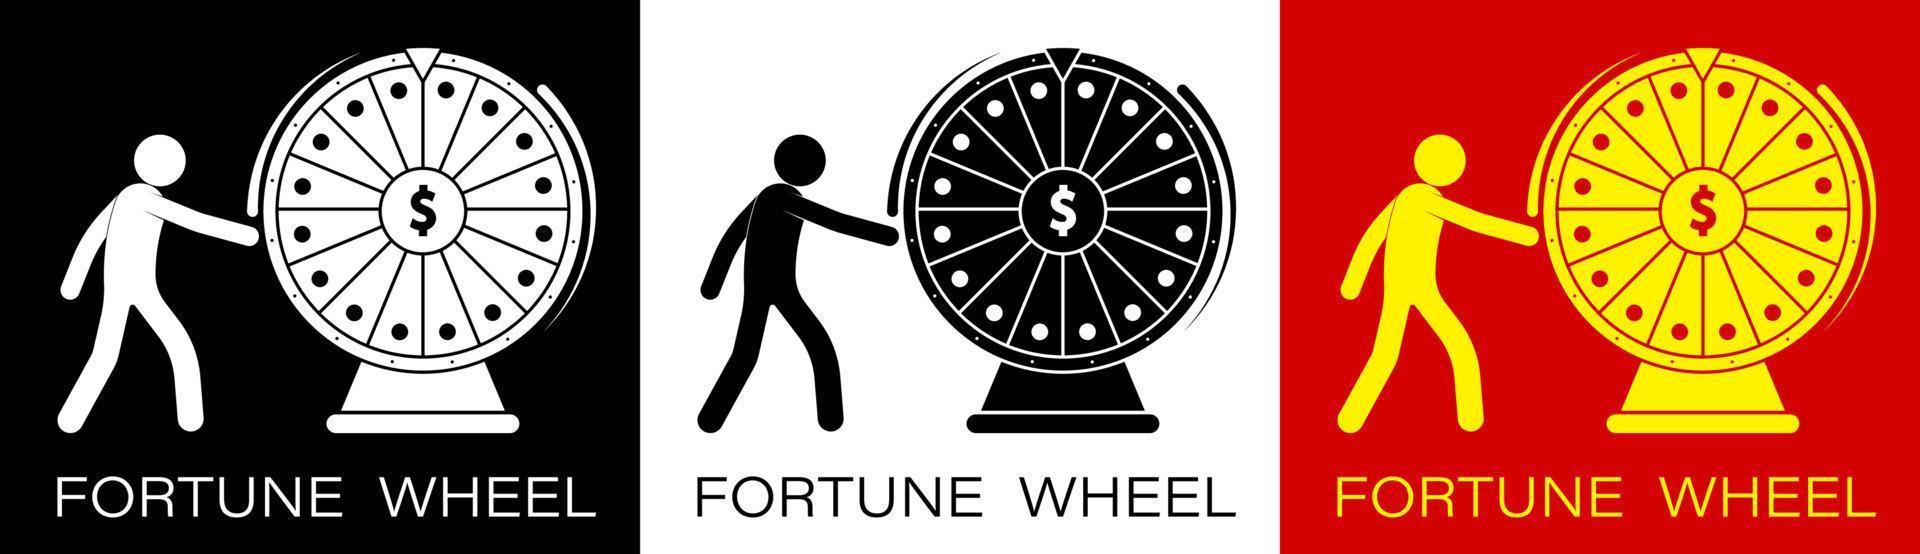 figura stilizzata, il giocatore gira la ruota della fortuna con un simbolo del dollaro al centro. fortuna, casinò e gioco d'azzardo. gira la roulette, tenta la fortuna. vettore minimalista